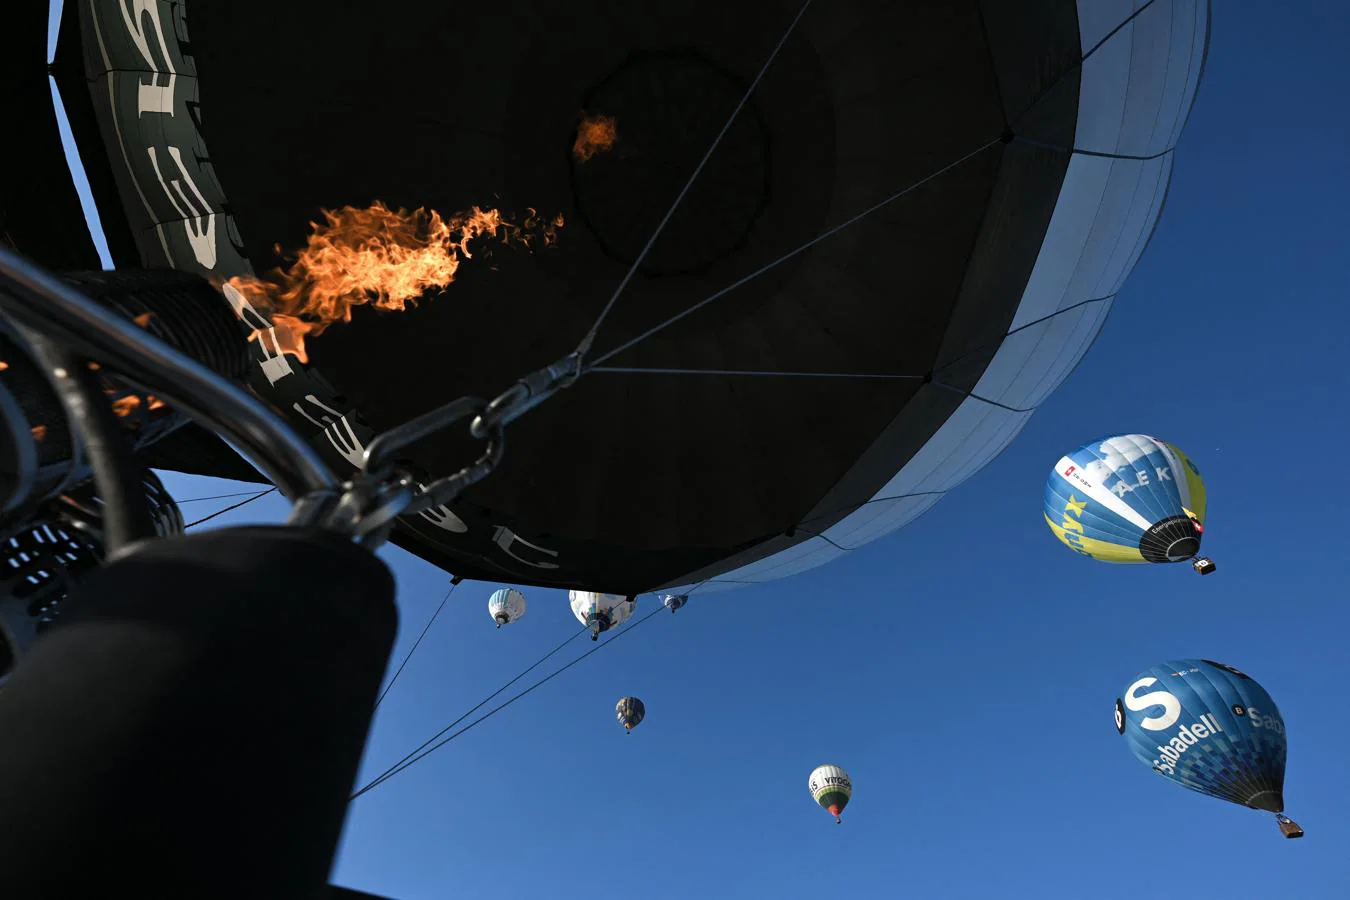 La llama que empuja al globo. Cuarenta pilotos de globos aerostáticos de todo el mundo participan en la edición de este año, limitada por la pandemia